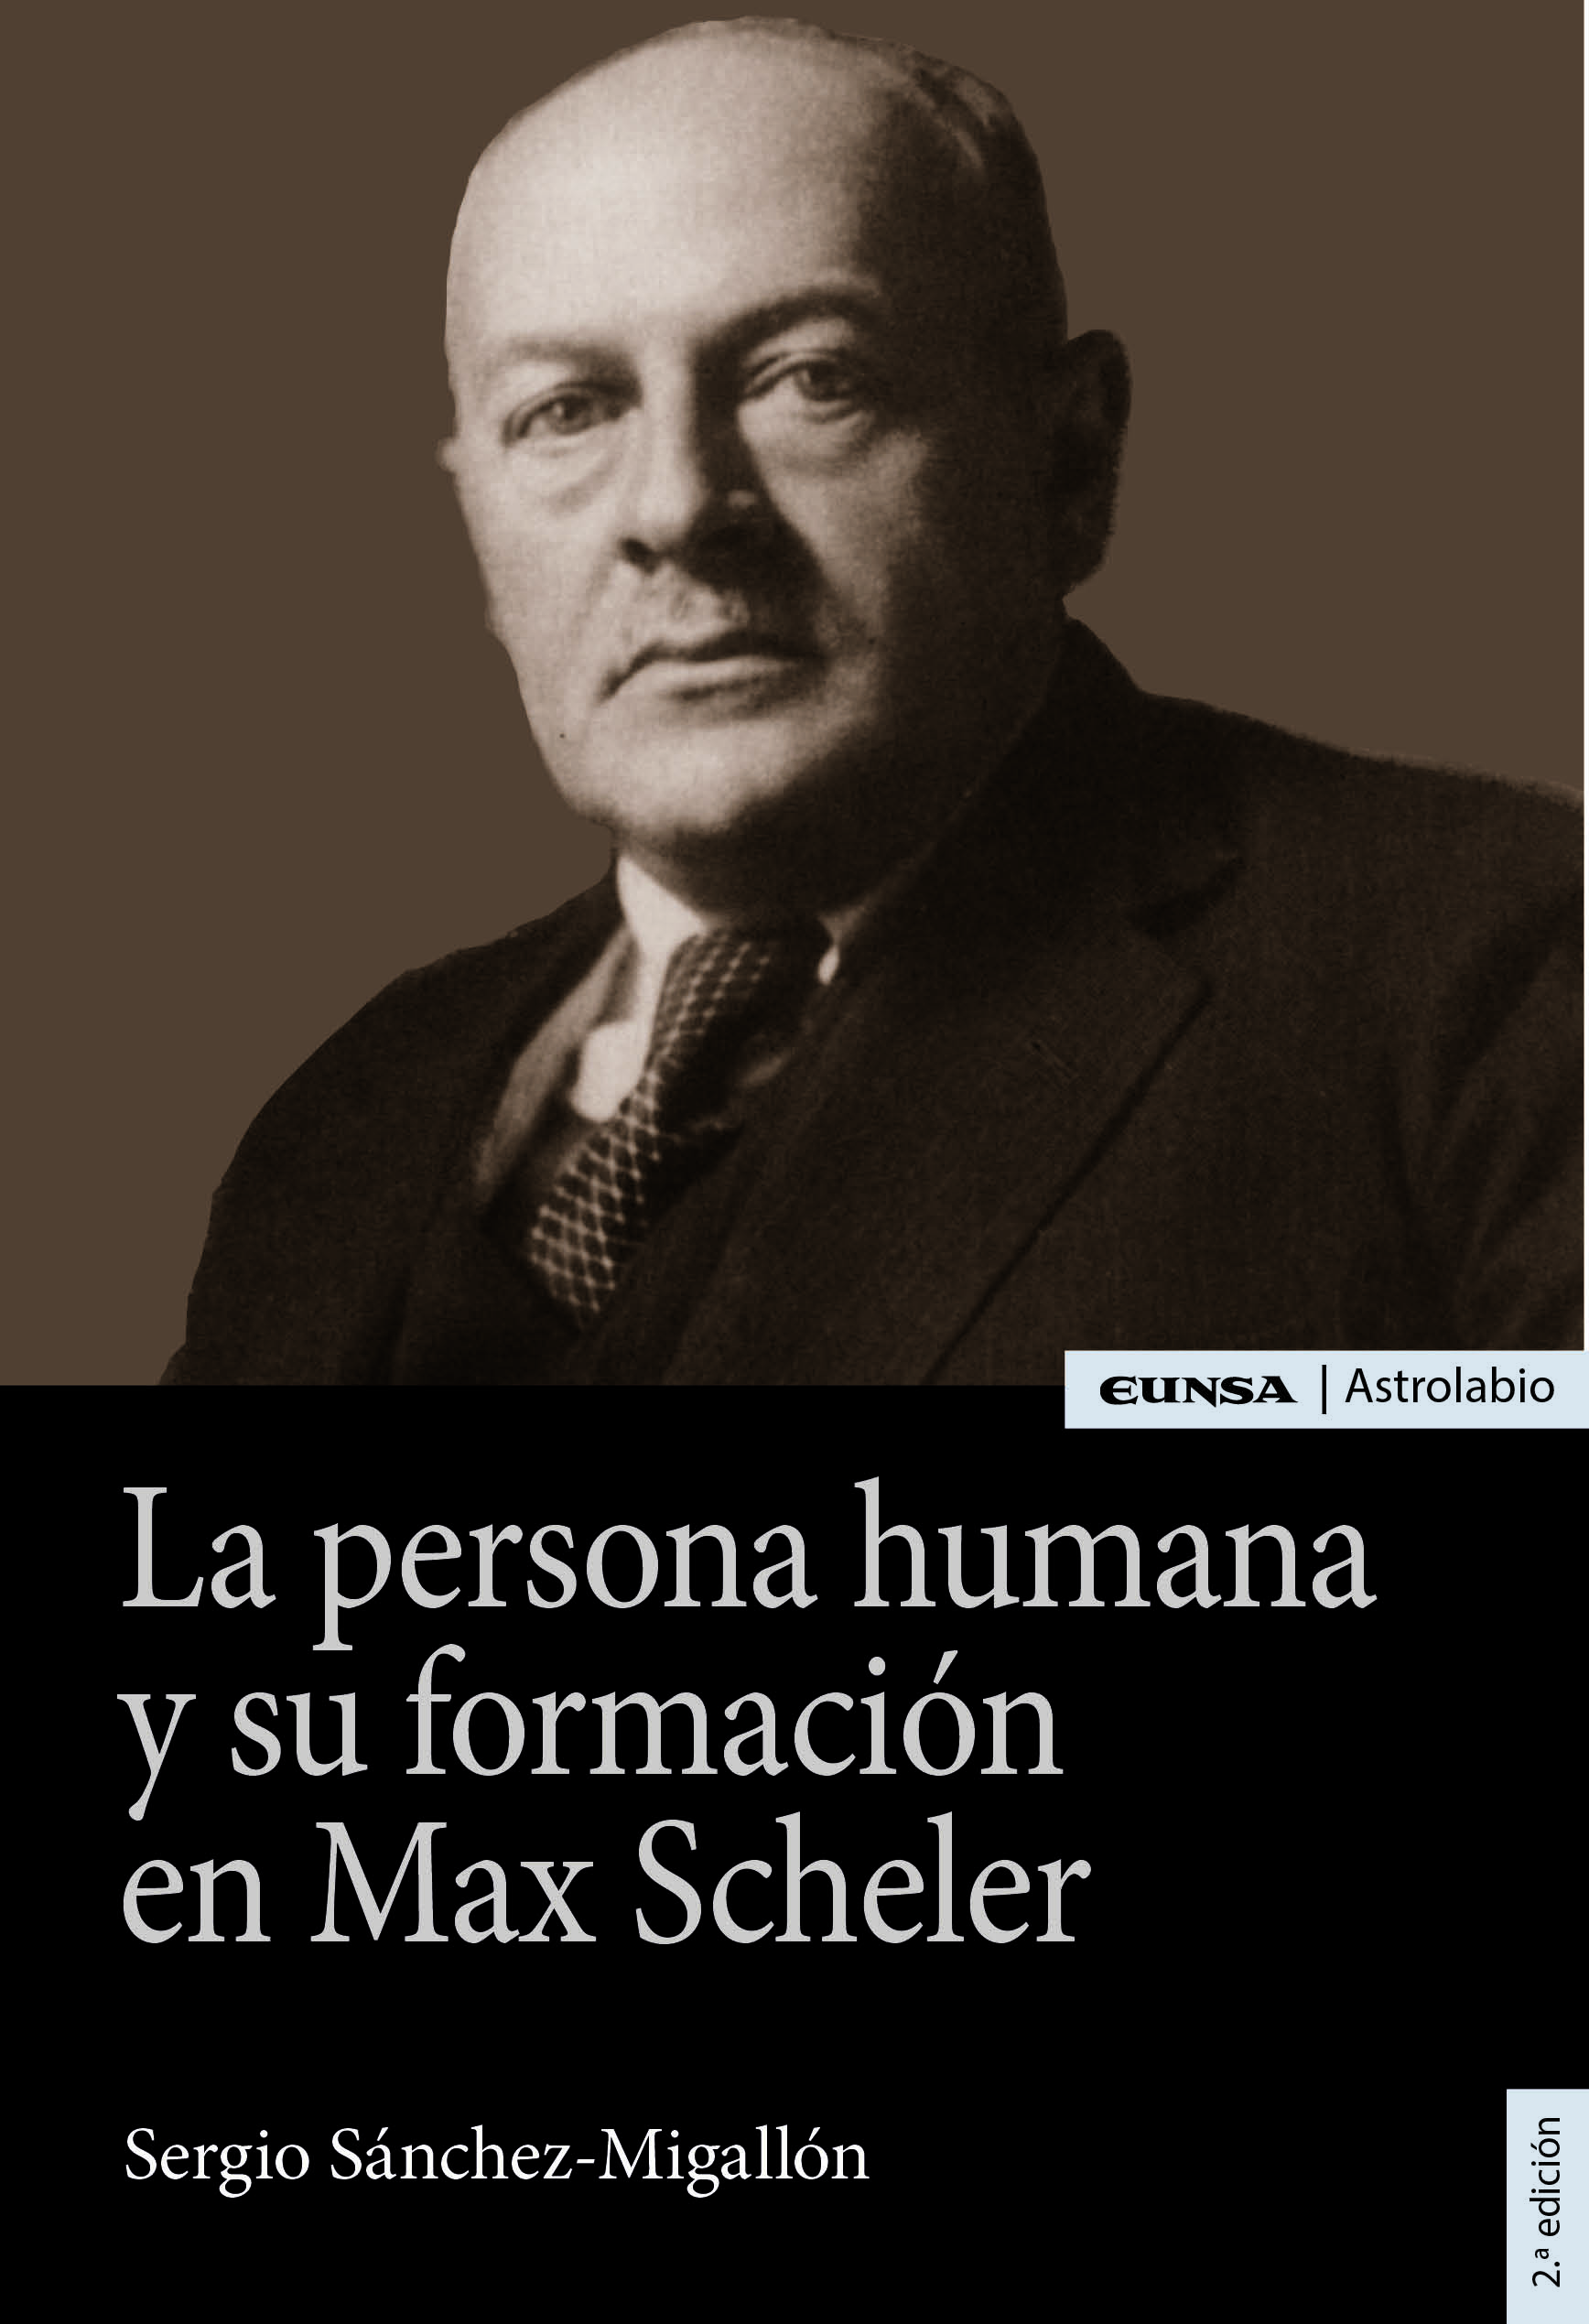 Persona humana y su formación en Max Scheler